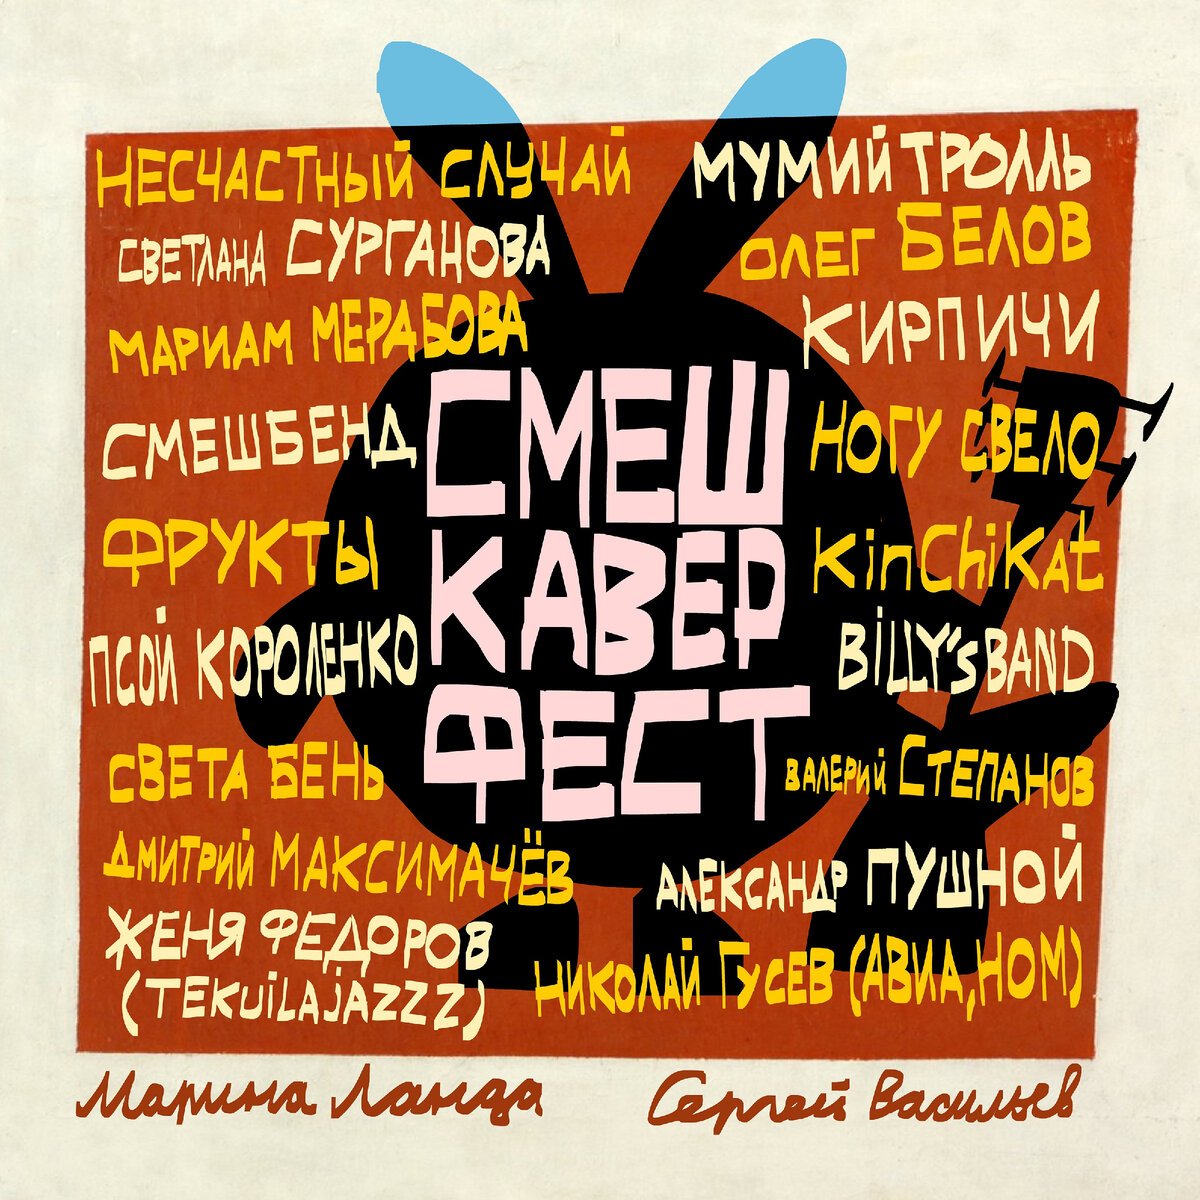 Обложку для альбома создал Джангир Сулейманов, режиссёр анимационного сериала «Смешарики».